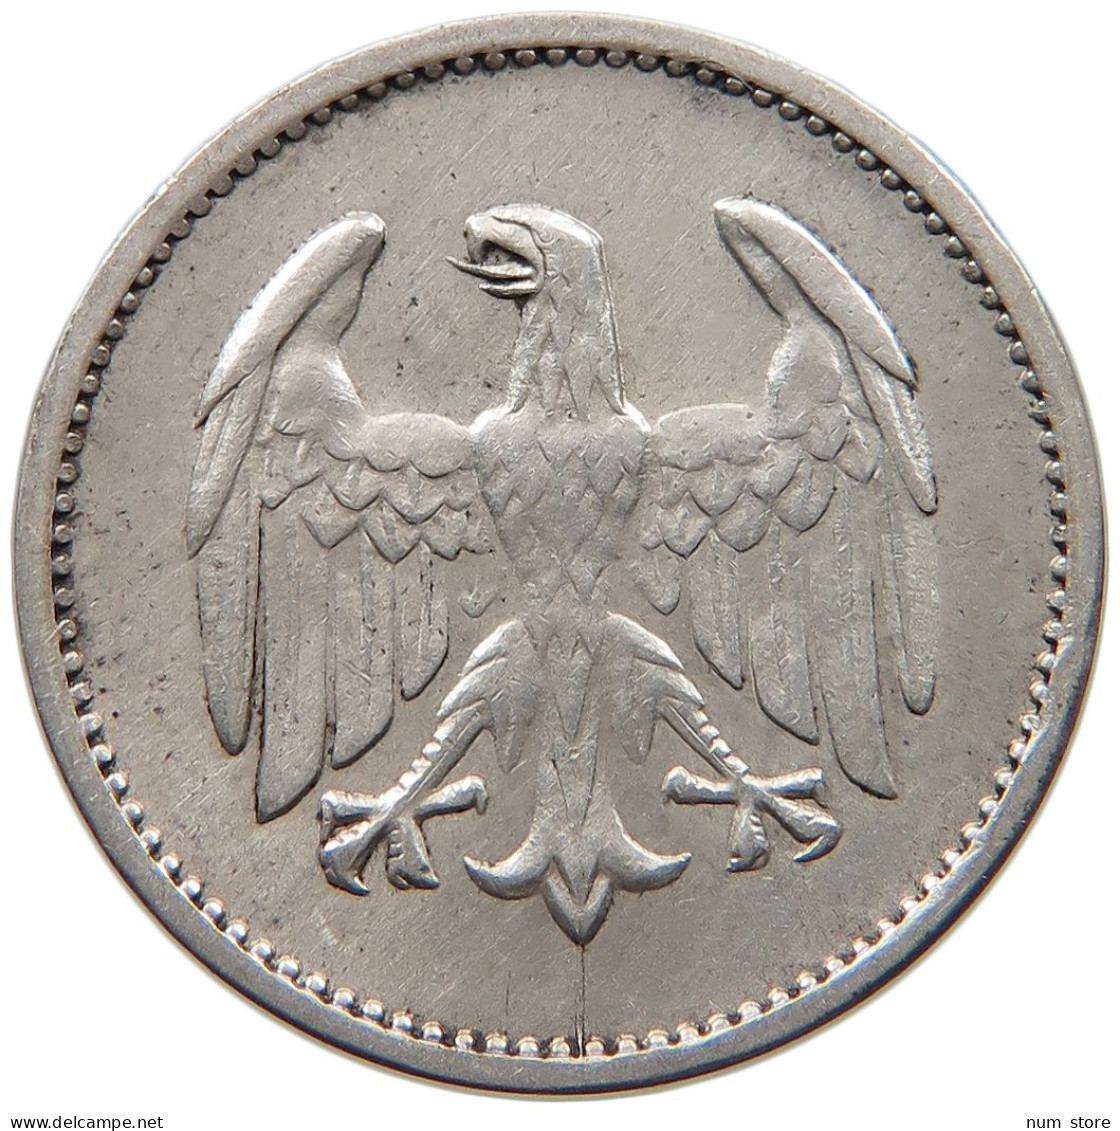 WEIMARER REPUBLIK MARK 1924 J  #c022 0399 - 1 Mark & 1 Reichsmark